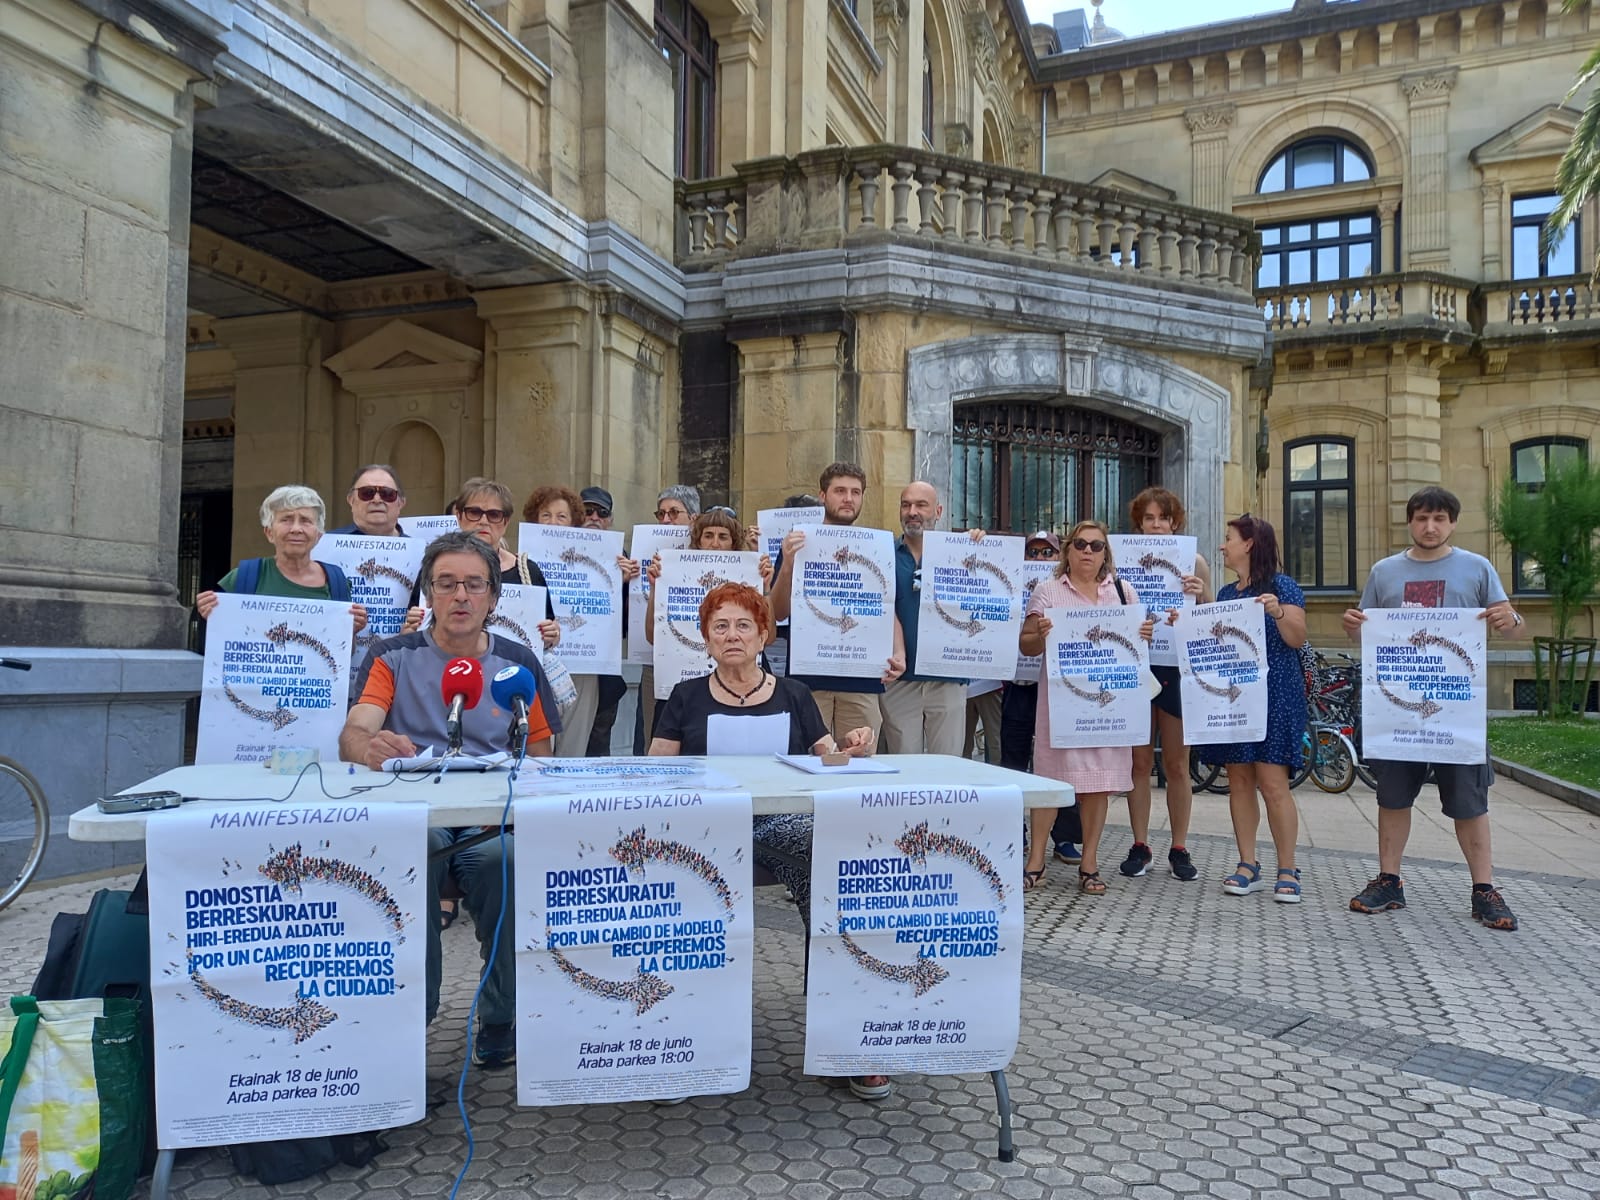 modelo - Donostia: Medio centenar de asociaciones llama a manifestarse contra el modelo de ciudad